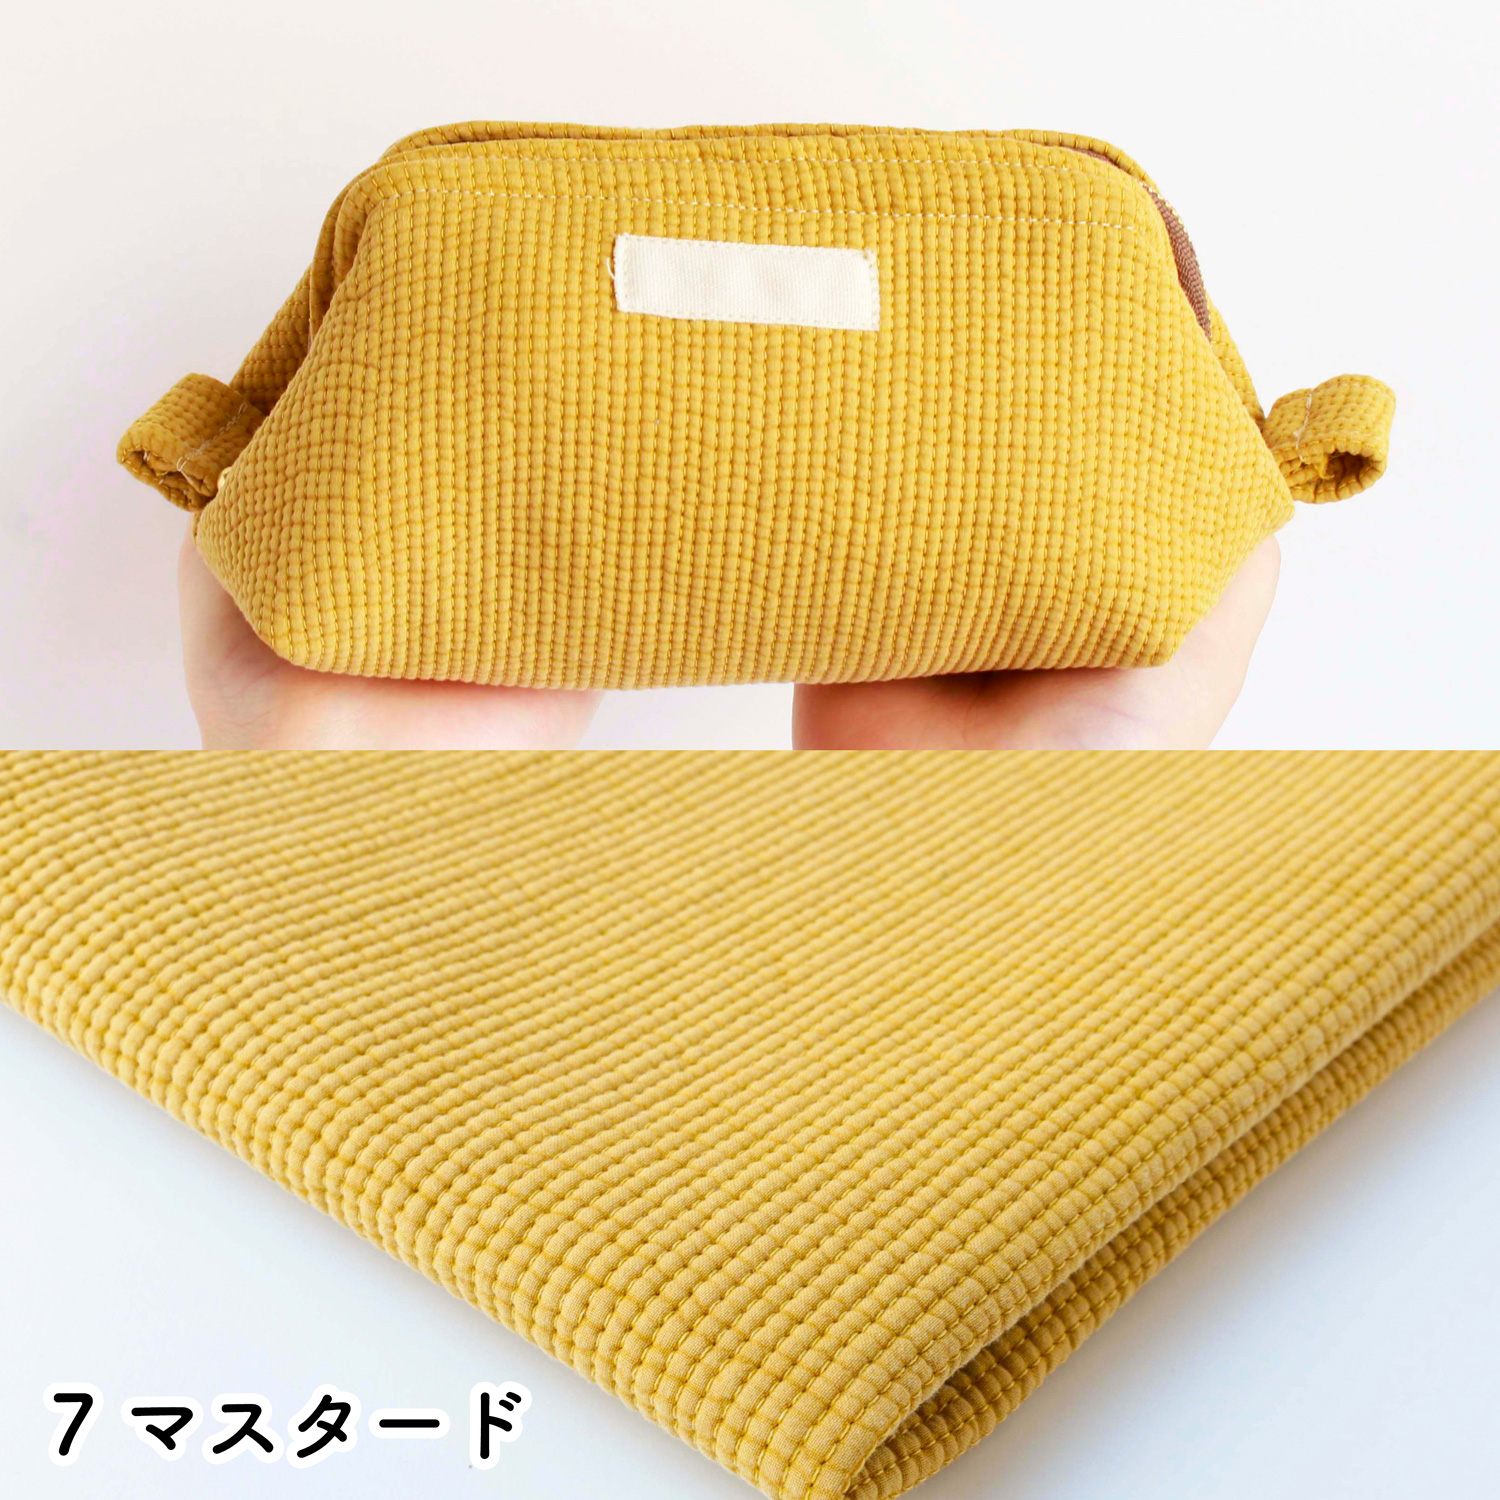 ■NBY303R nubi ヌビ 韓国伝統キルティング生地 巾3mmサイズ 原反約8m乱巻 (巻) 12